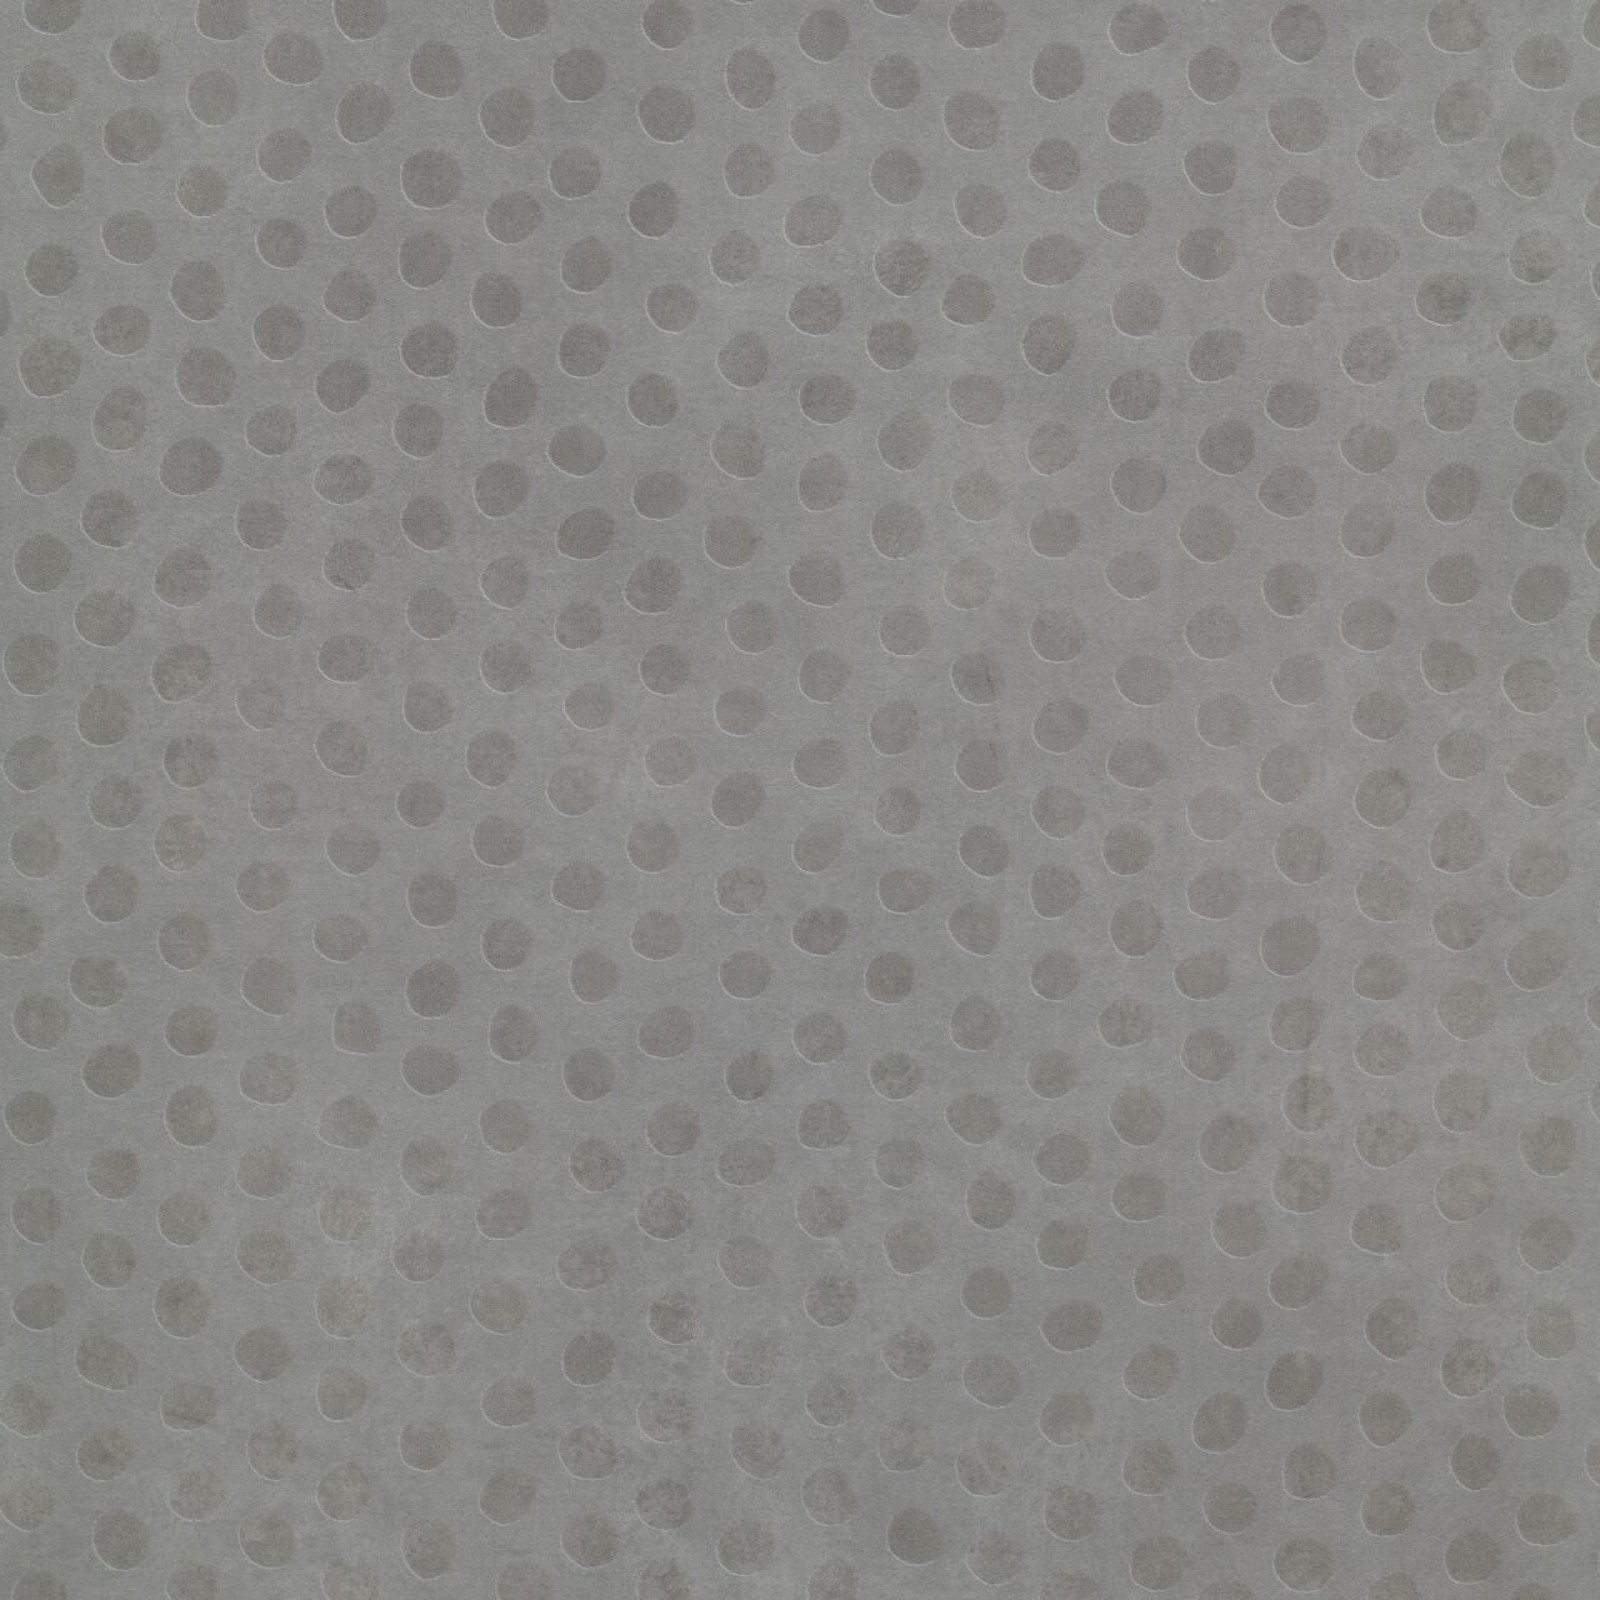 Vzor - 63434 cool concrete dots (50x50cm)